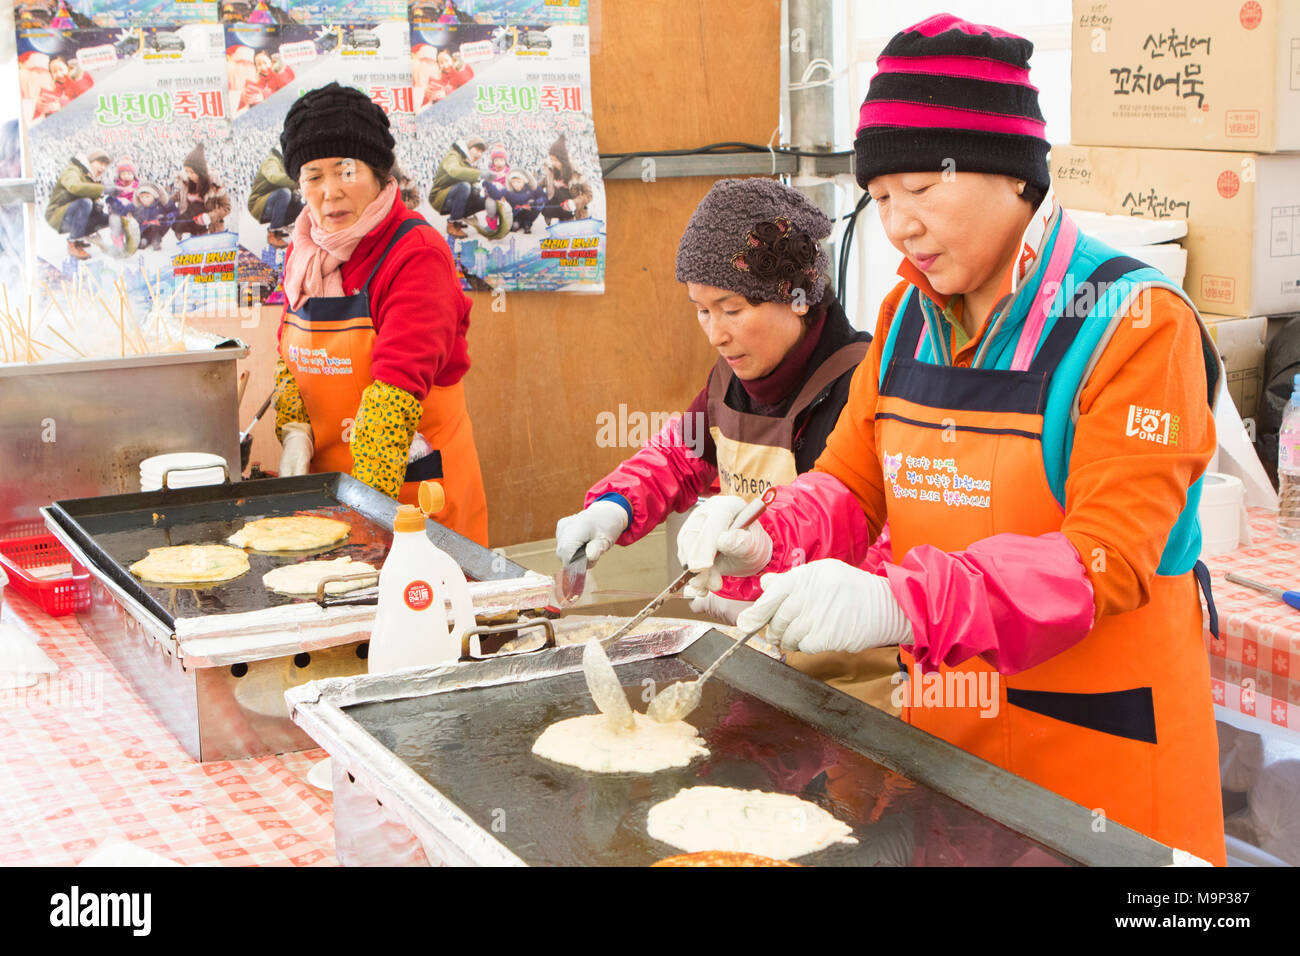 Le donne coreane stanno rendendo Jeon Corea, frittelle, all'Hwacheon Sancheoneo festival di ghiaccio. Il Hwacheon Sancheoneo Festival di ghiaccio è una tradizione per il popolo coreano. Ogni anno nel mese di gennaio la folla si riuniranno presso il fiume congelato per celebrare il freddo e la neve dell'inverno. Attrazione principale è la pesca sul ghiaccio. Giovani e vecchi attendere pazientemente su un piccolo buco nel ghiaccio per una trota di mordere. In tende possono lasciare il pesce grigliato dopo che loro sono mangiati. Tra le altre attività sono corse in slittino e pattinaggio sul ghiaccio. La vicina regione Pyeongchang ospiterà le Olimpiadi Invernali nel febbraio 2018. Foto Stock